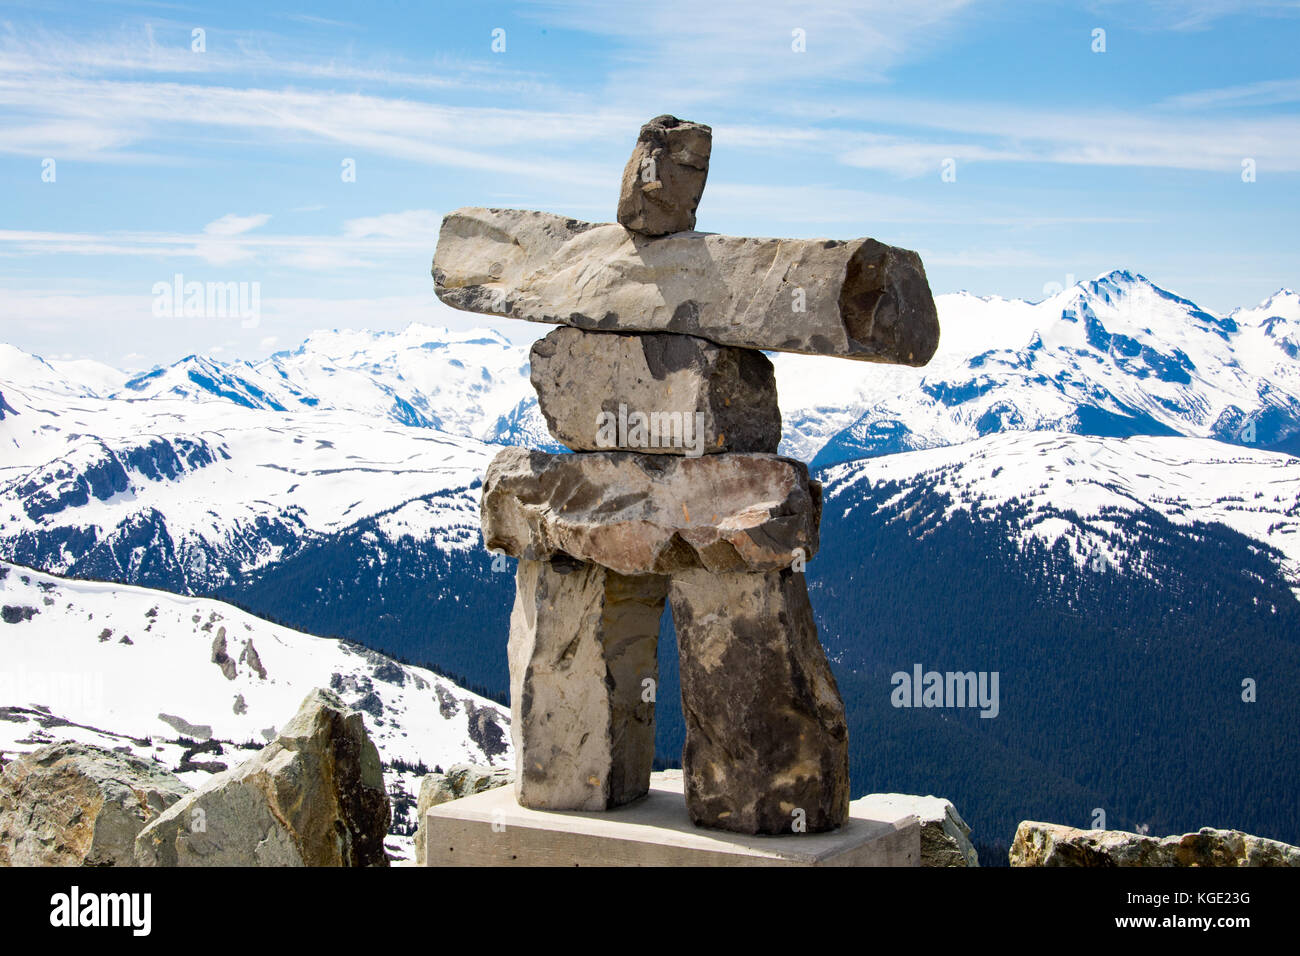 Inuit Inukshuk stone statue, Whistler mountain resort, British Columbia, Canada Stock Photo